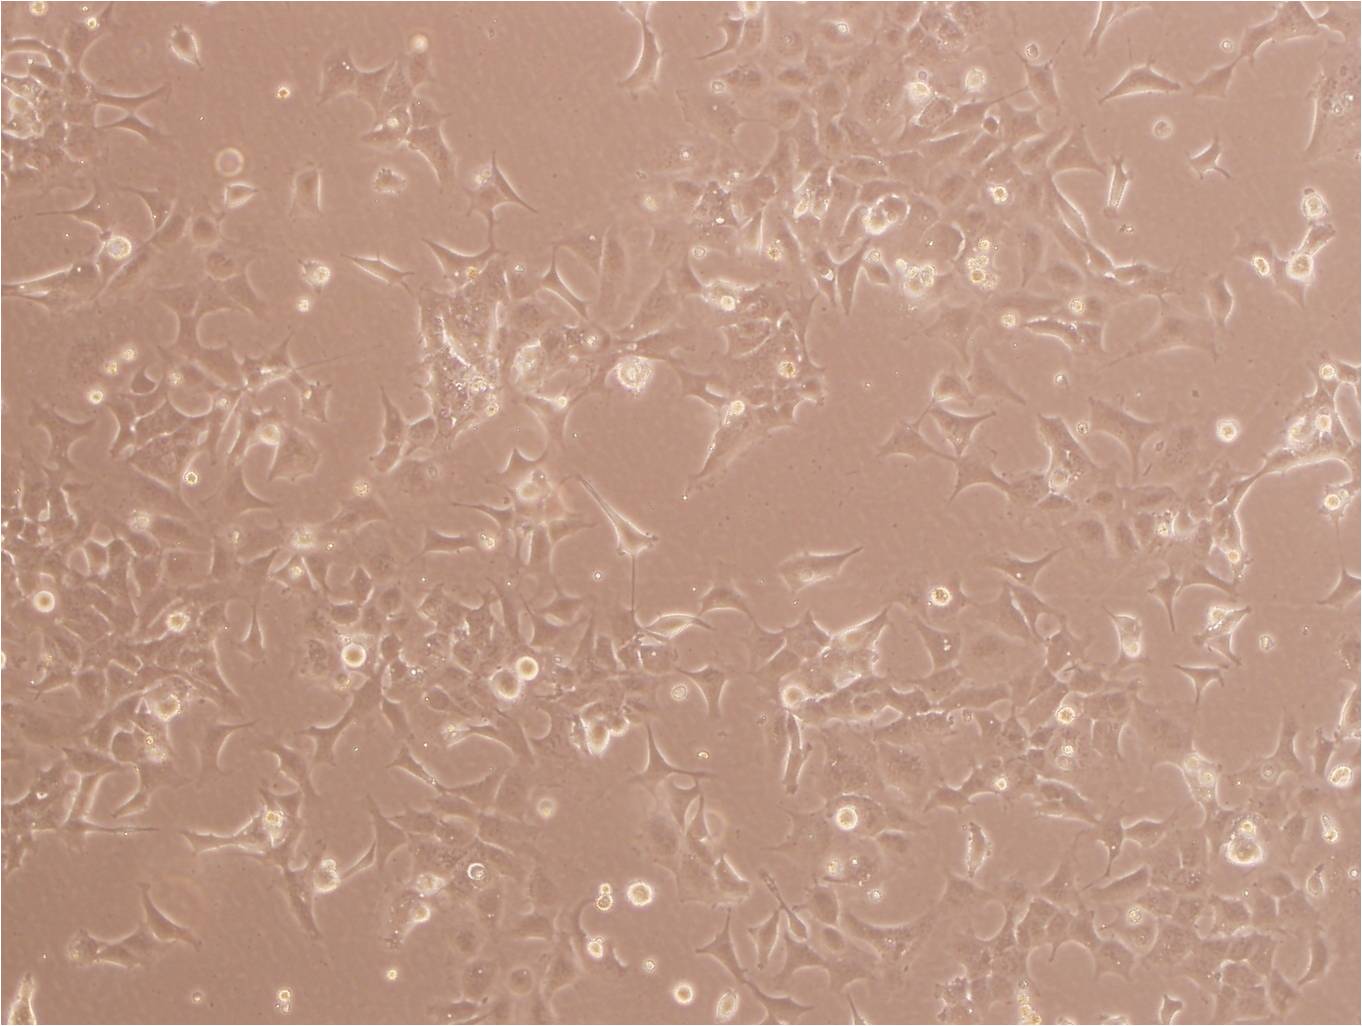 BEL-7402 Cells|人肝癌细胞系,BEL-7402 Cells